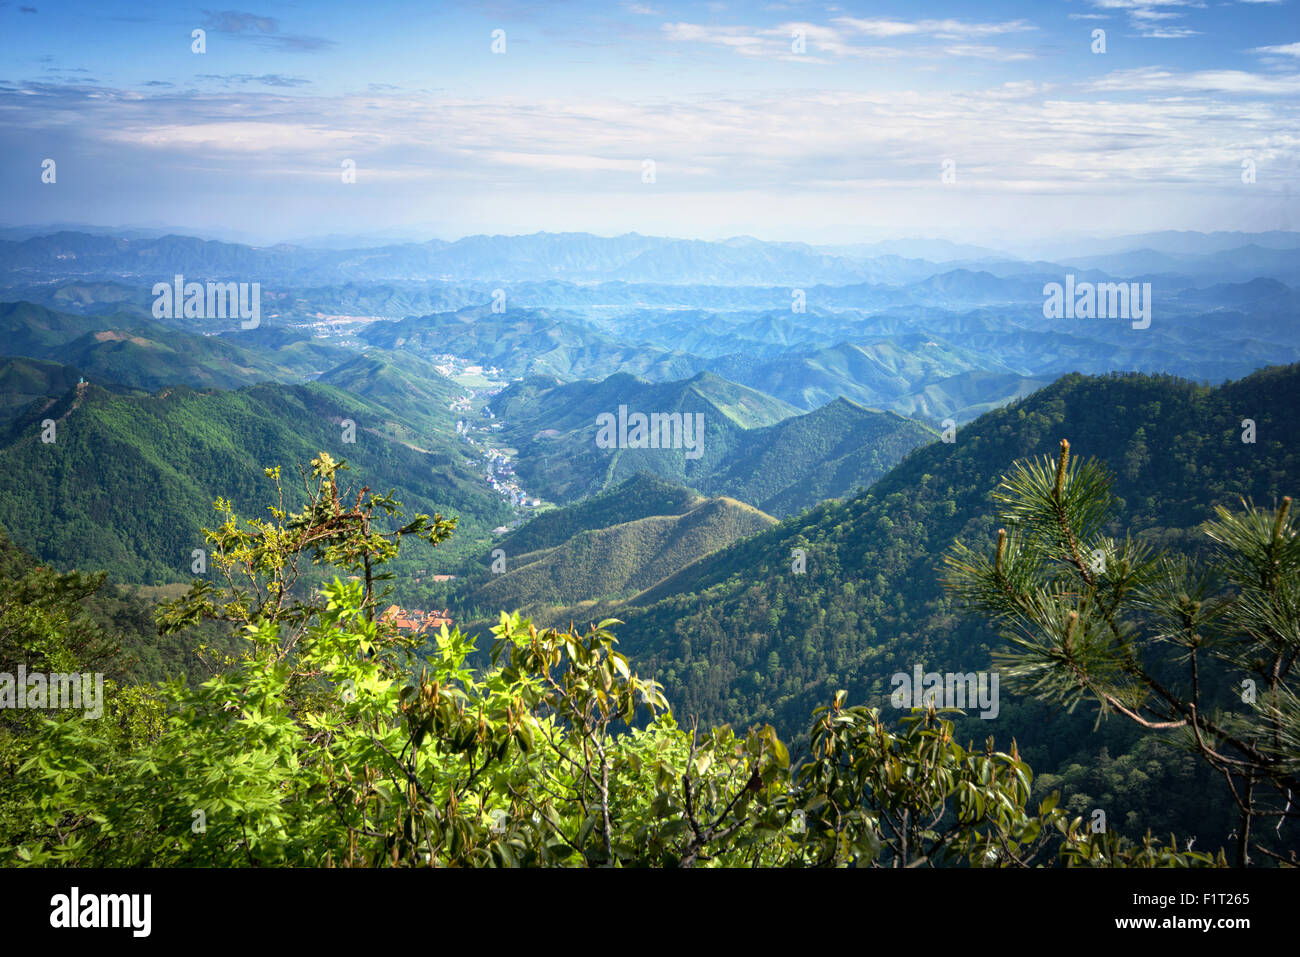 Misty catene montuose e valle con villaggio come visto da Tian Shan um picco, Zhejiang, Cina e Asia Foto Stock